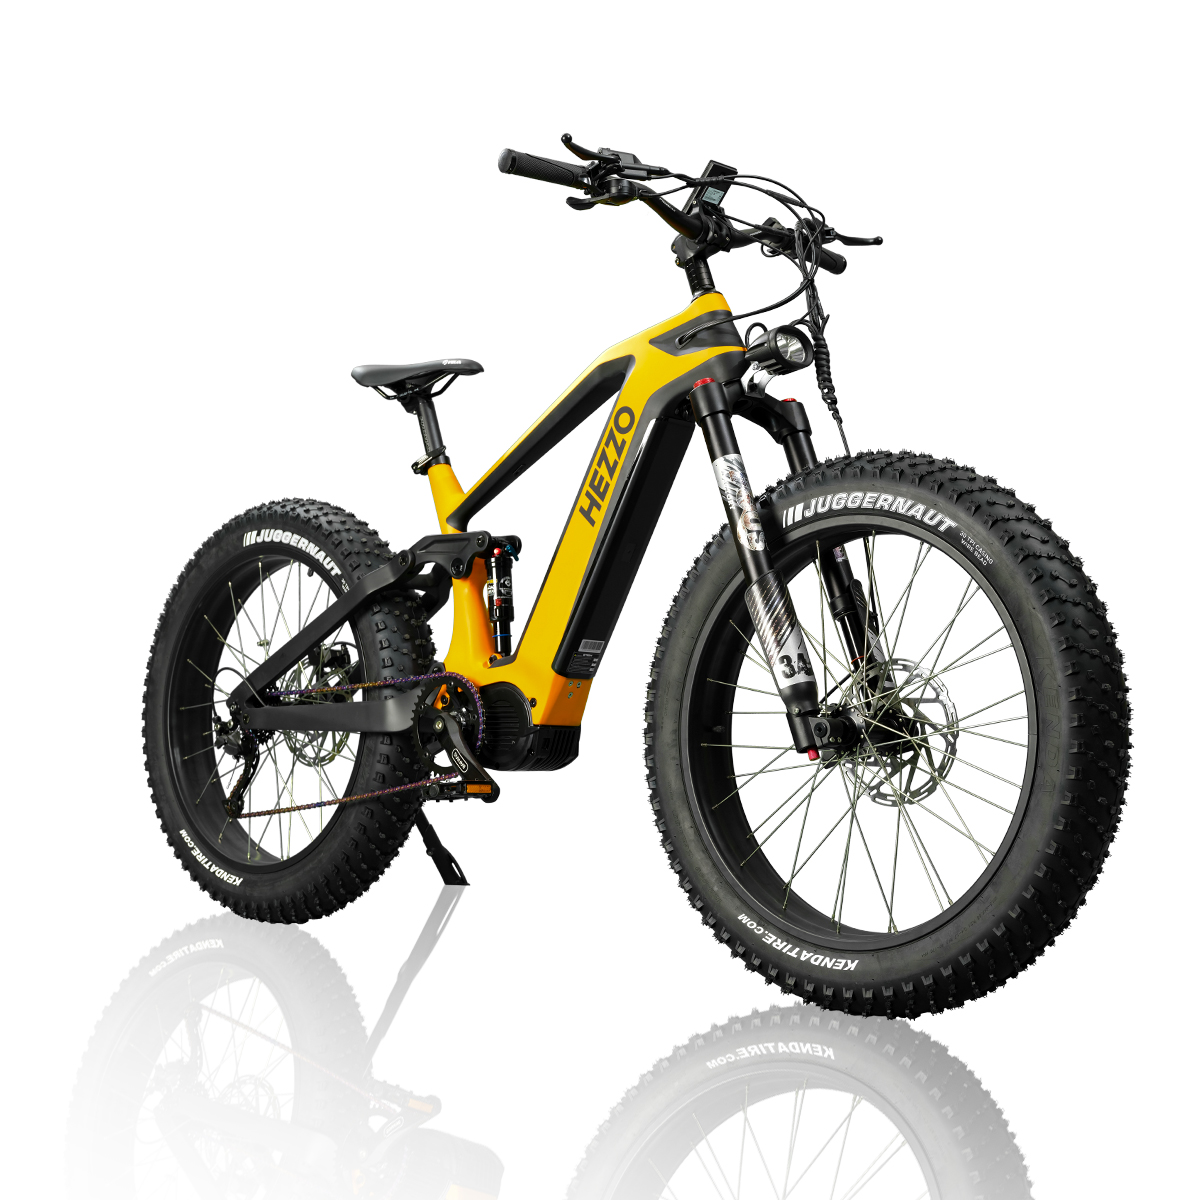 HEZZO HM-26Pro Bicicleta elèctrica de fibra de carboni 52V 1000W Bafang M620 Bicicleta elèctrica de tracció mitjana Shimano 9 velocitats 21AH LG 21700 Bateria DNM Suspensió completa Neu i tot terreny 26 × 4,8″ Kenda Fat Tire Mope...